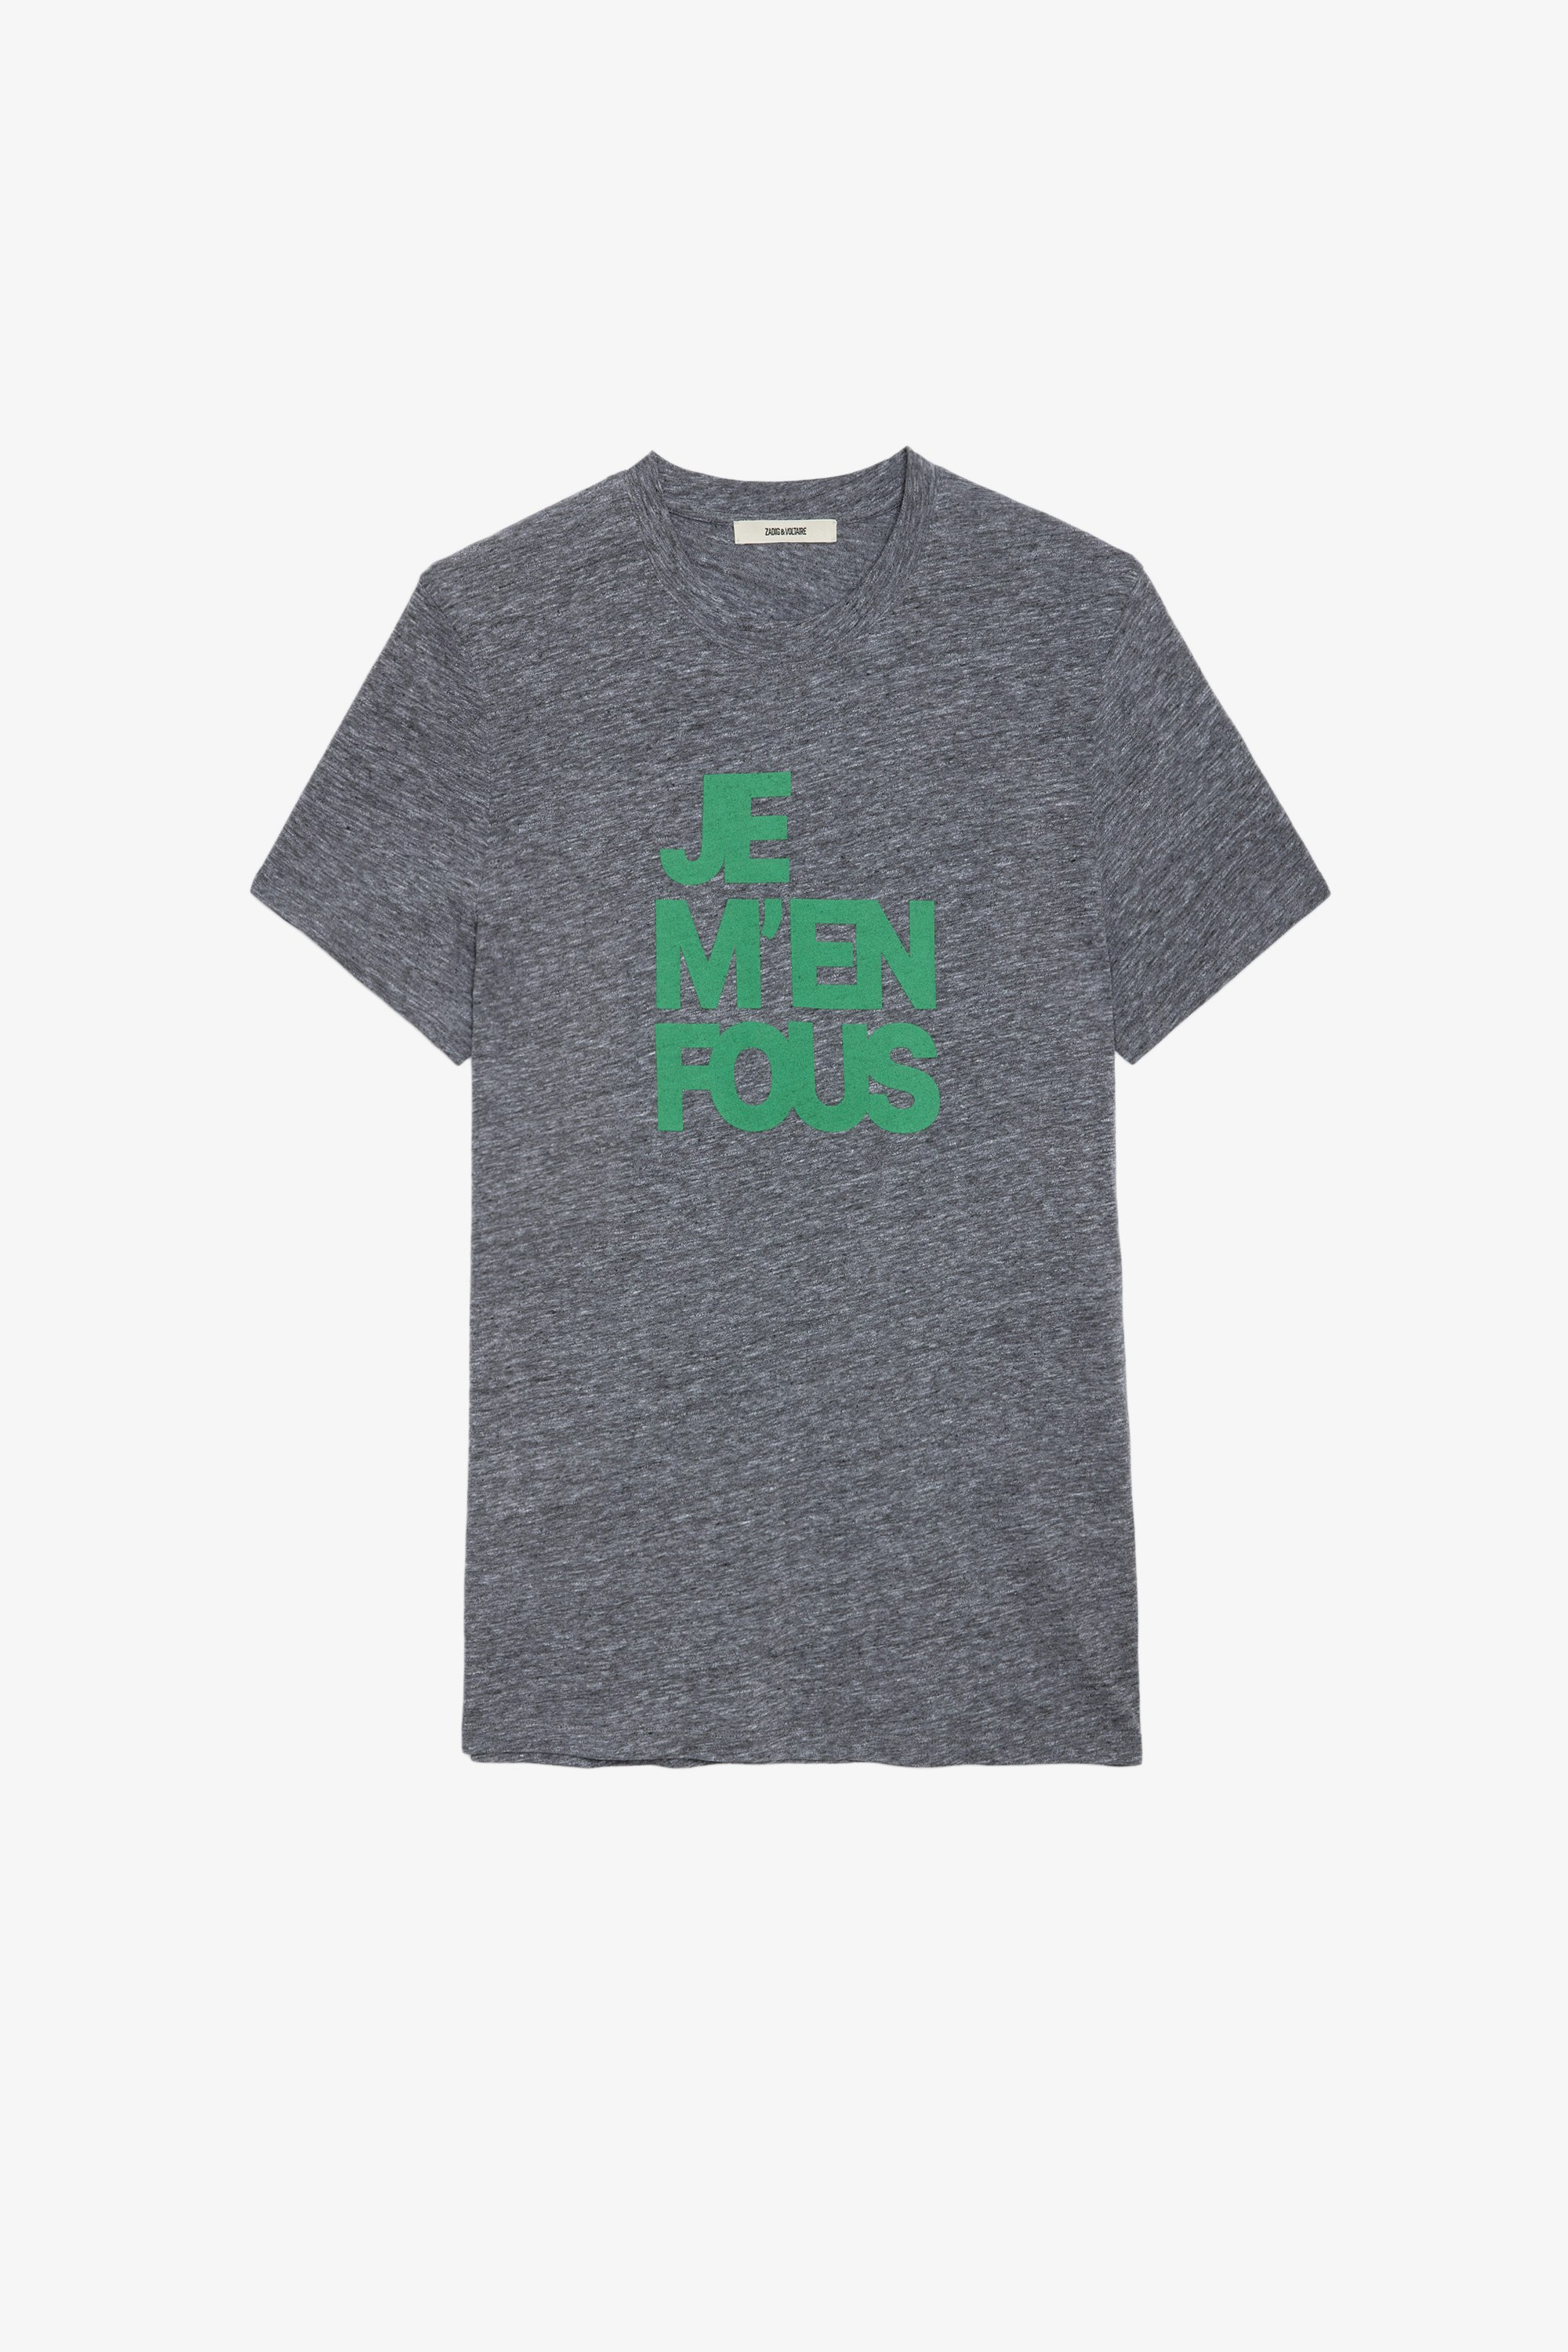 Tommy T-shirt Men’s grey cotton T-shirt with “Je m’en fous” slogan